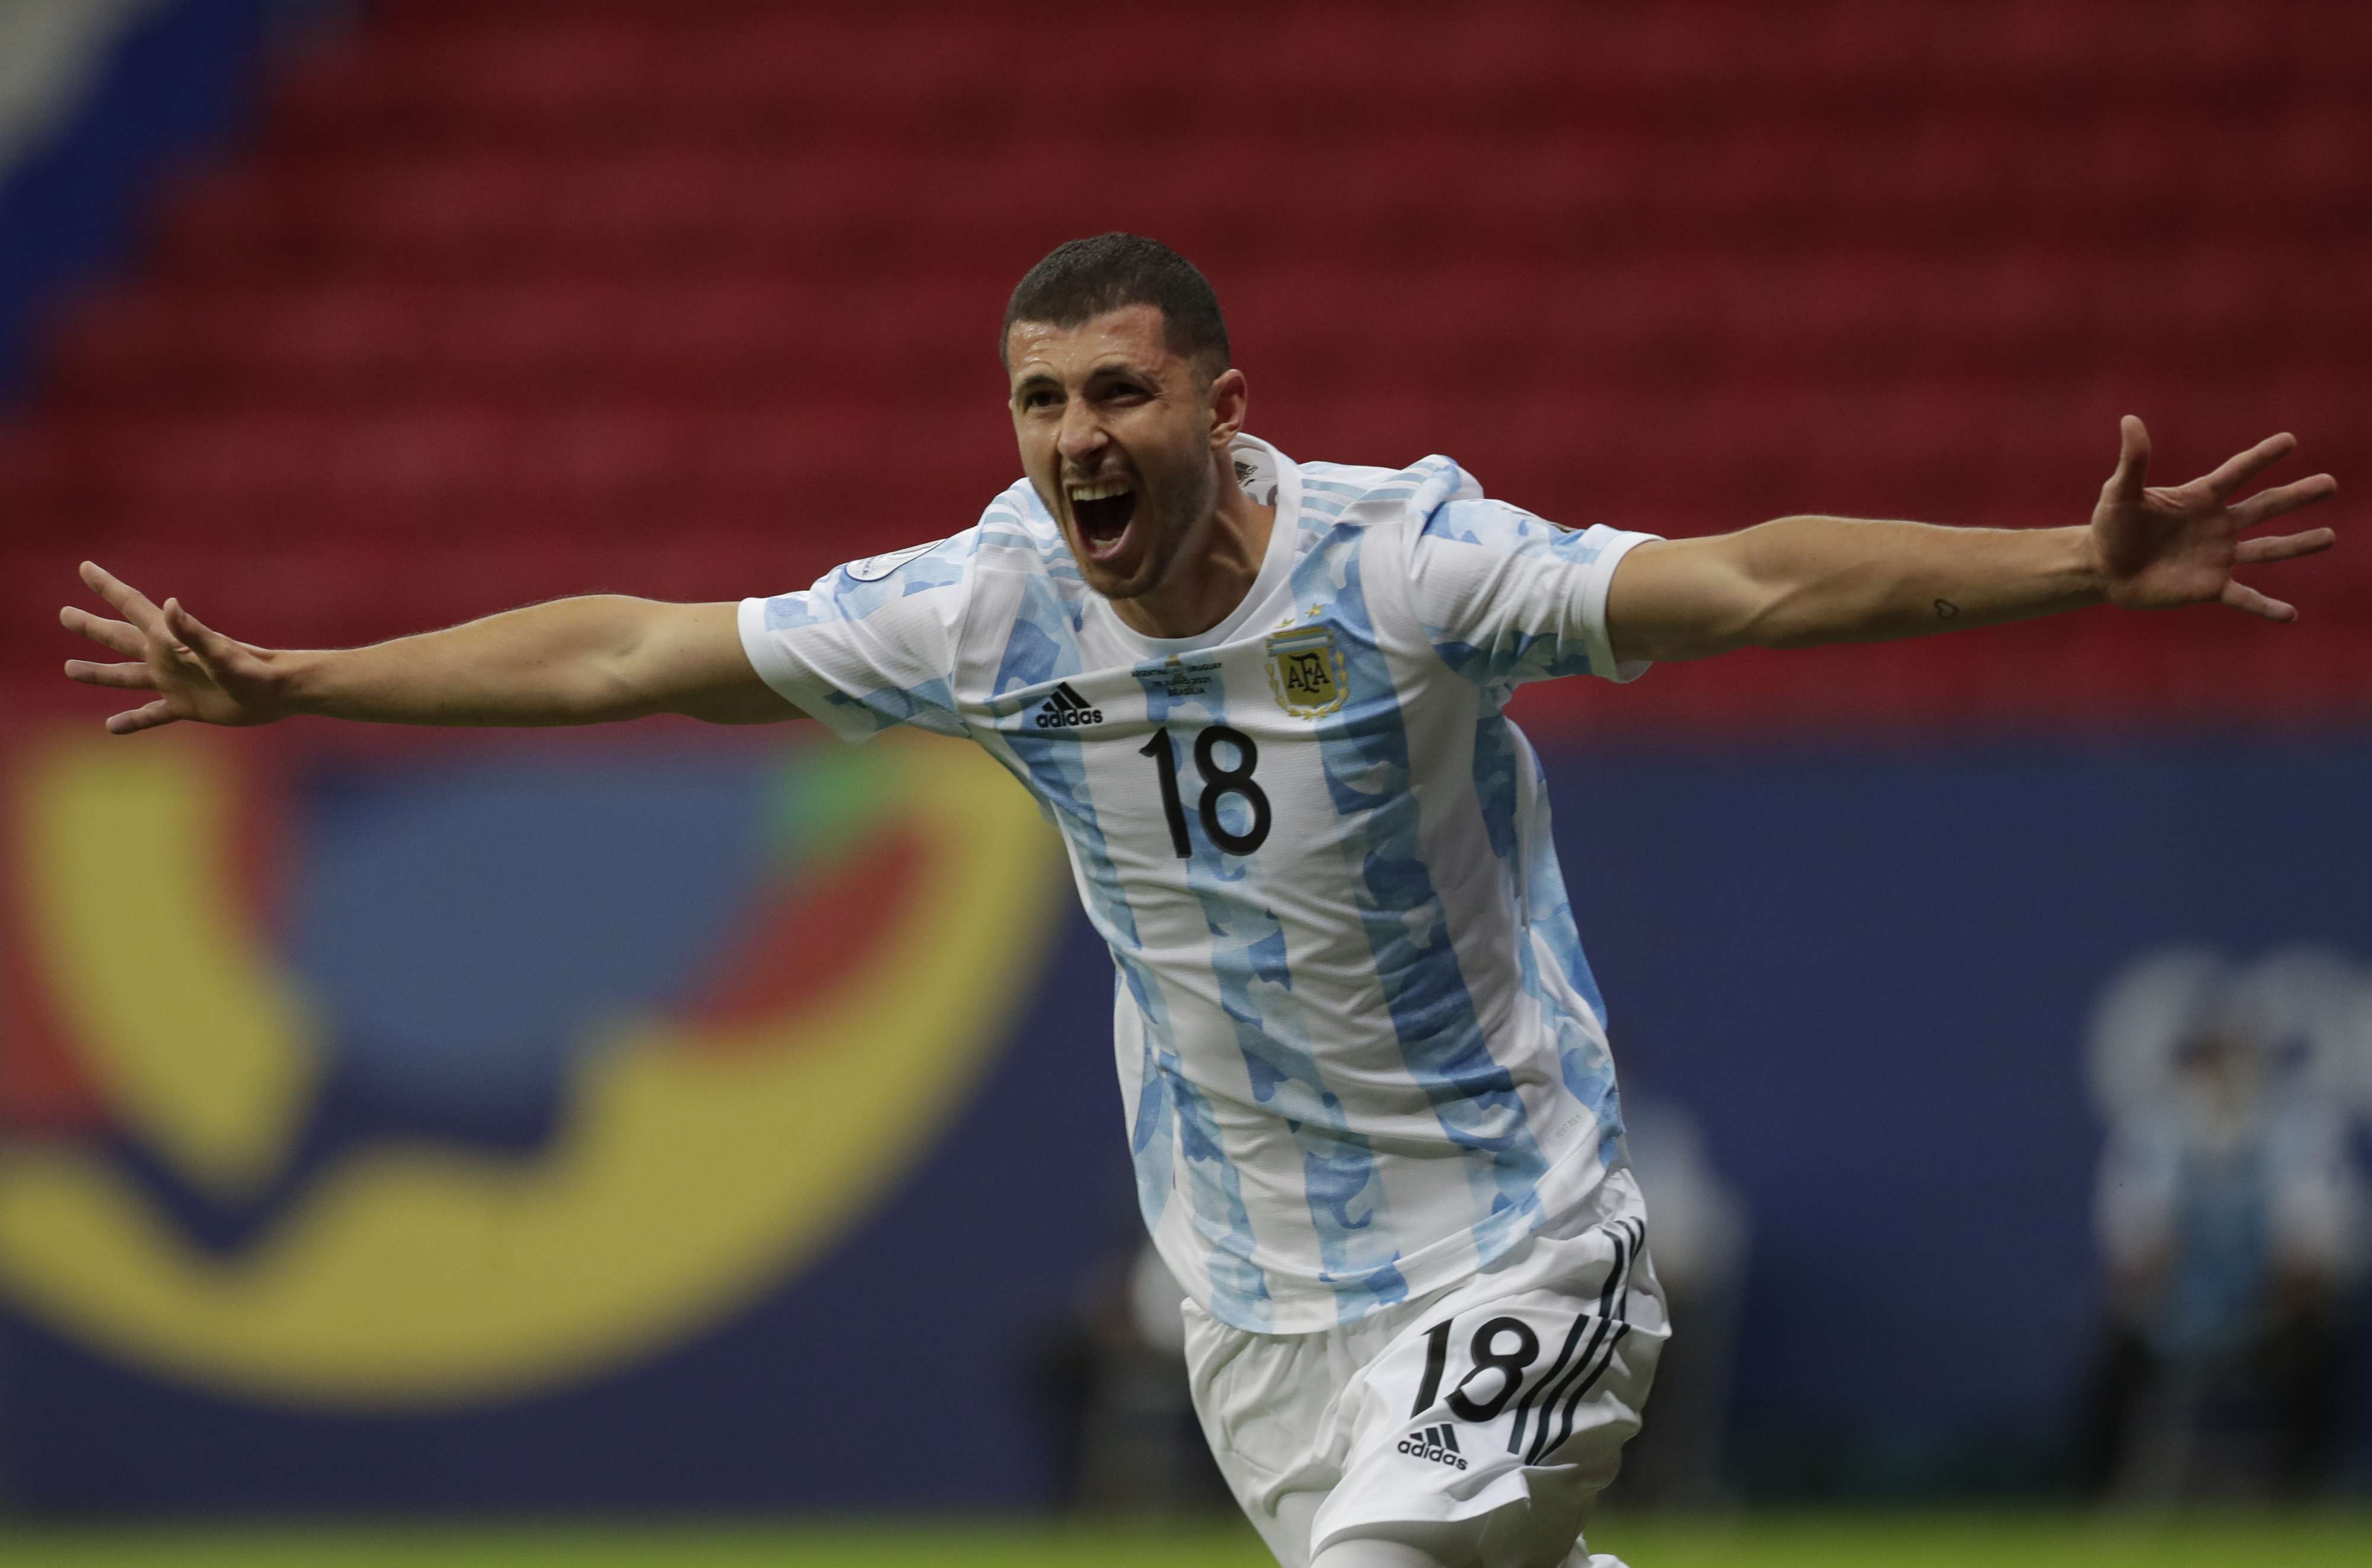 الأرجنتين تتصدر المجموعة الأولى بأربع نقاط، بالتساوي مع تشيلي